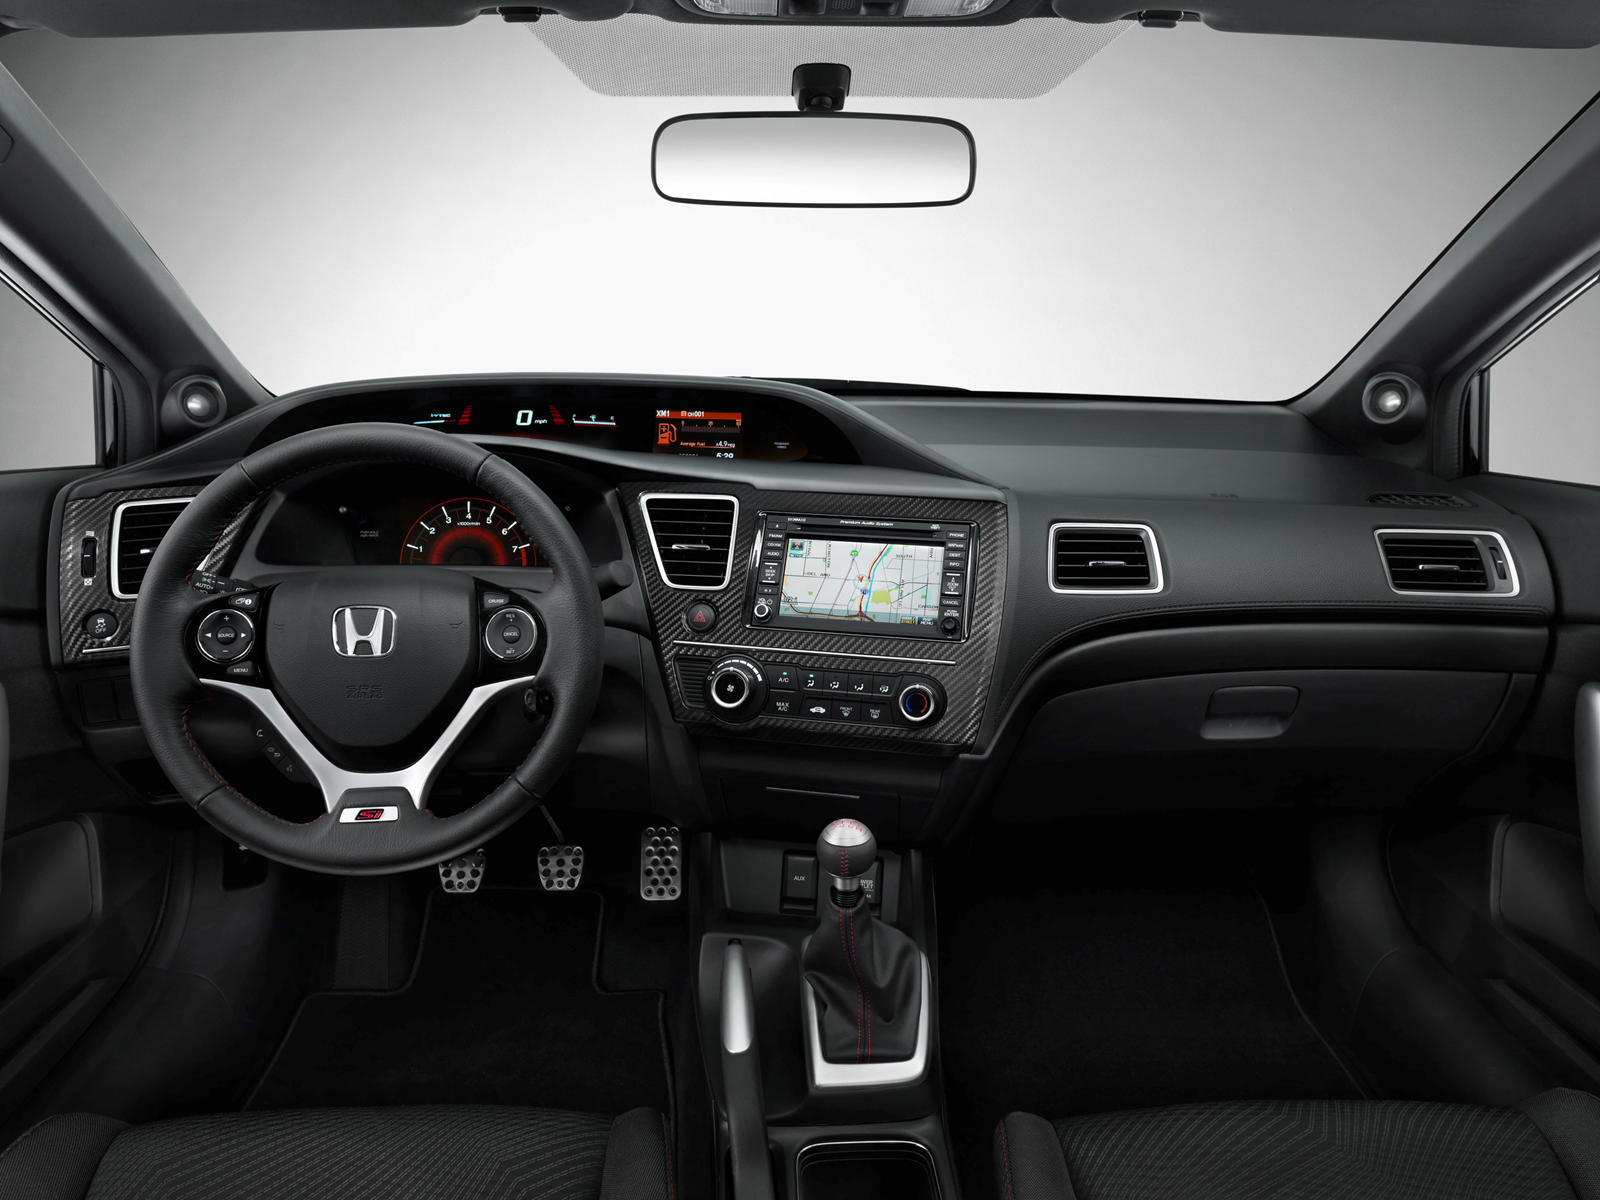 2015 Honda Civic Si Sedan Dashboard